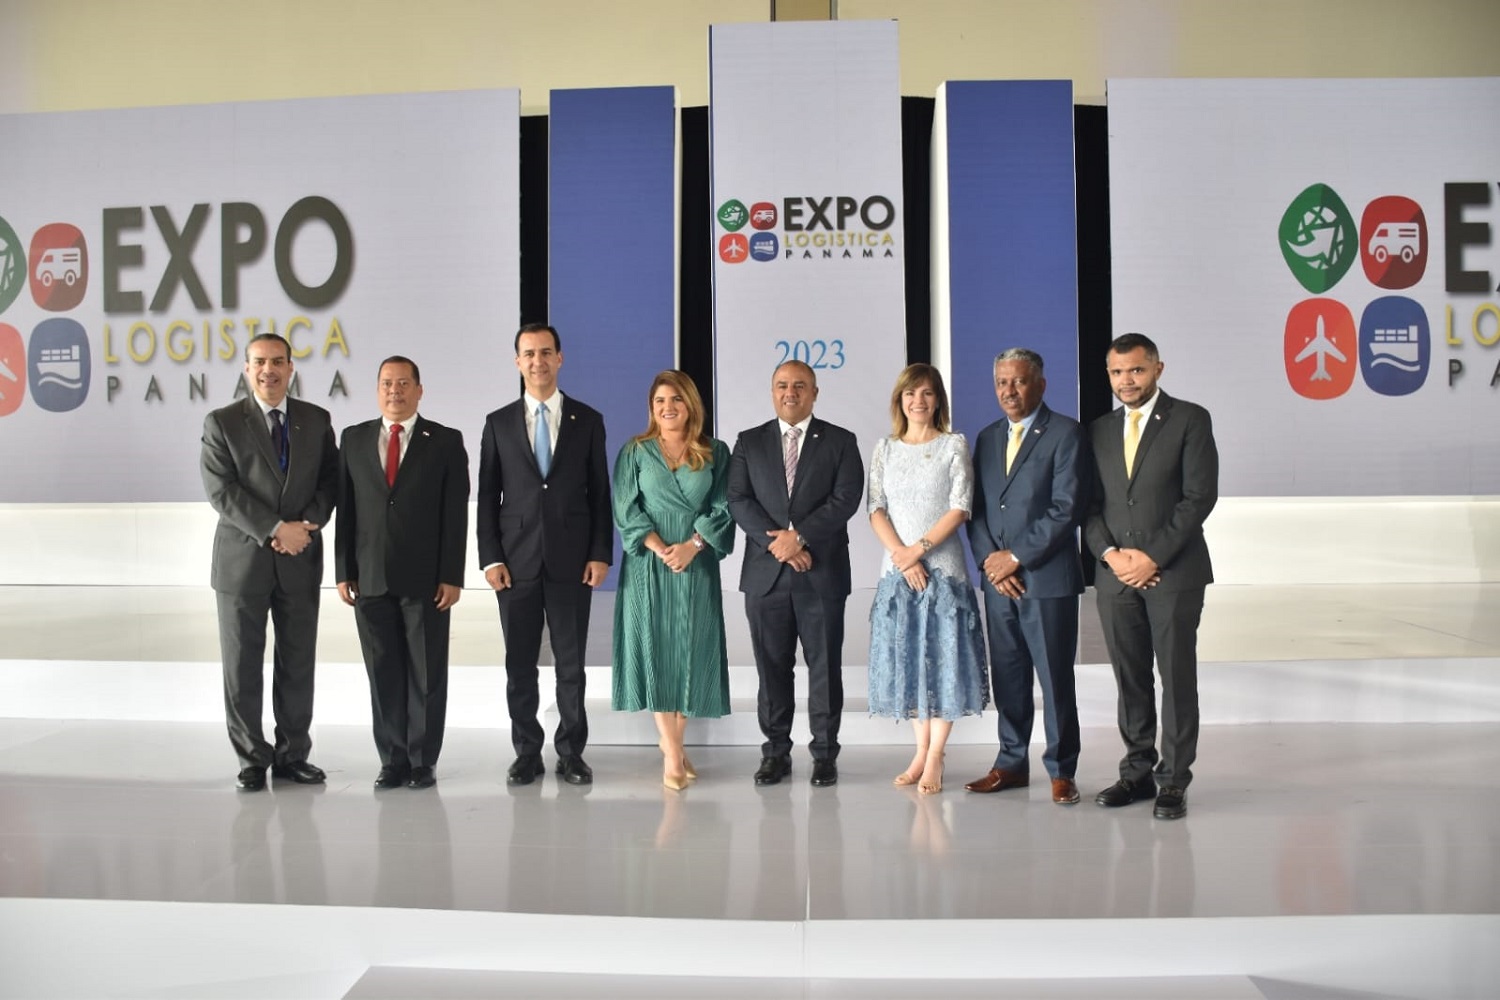 Expo Logística Panamá 2023, punto de encuentro y conexión con el mundo